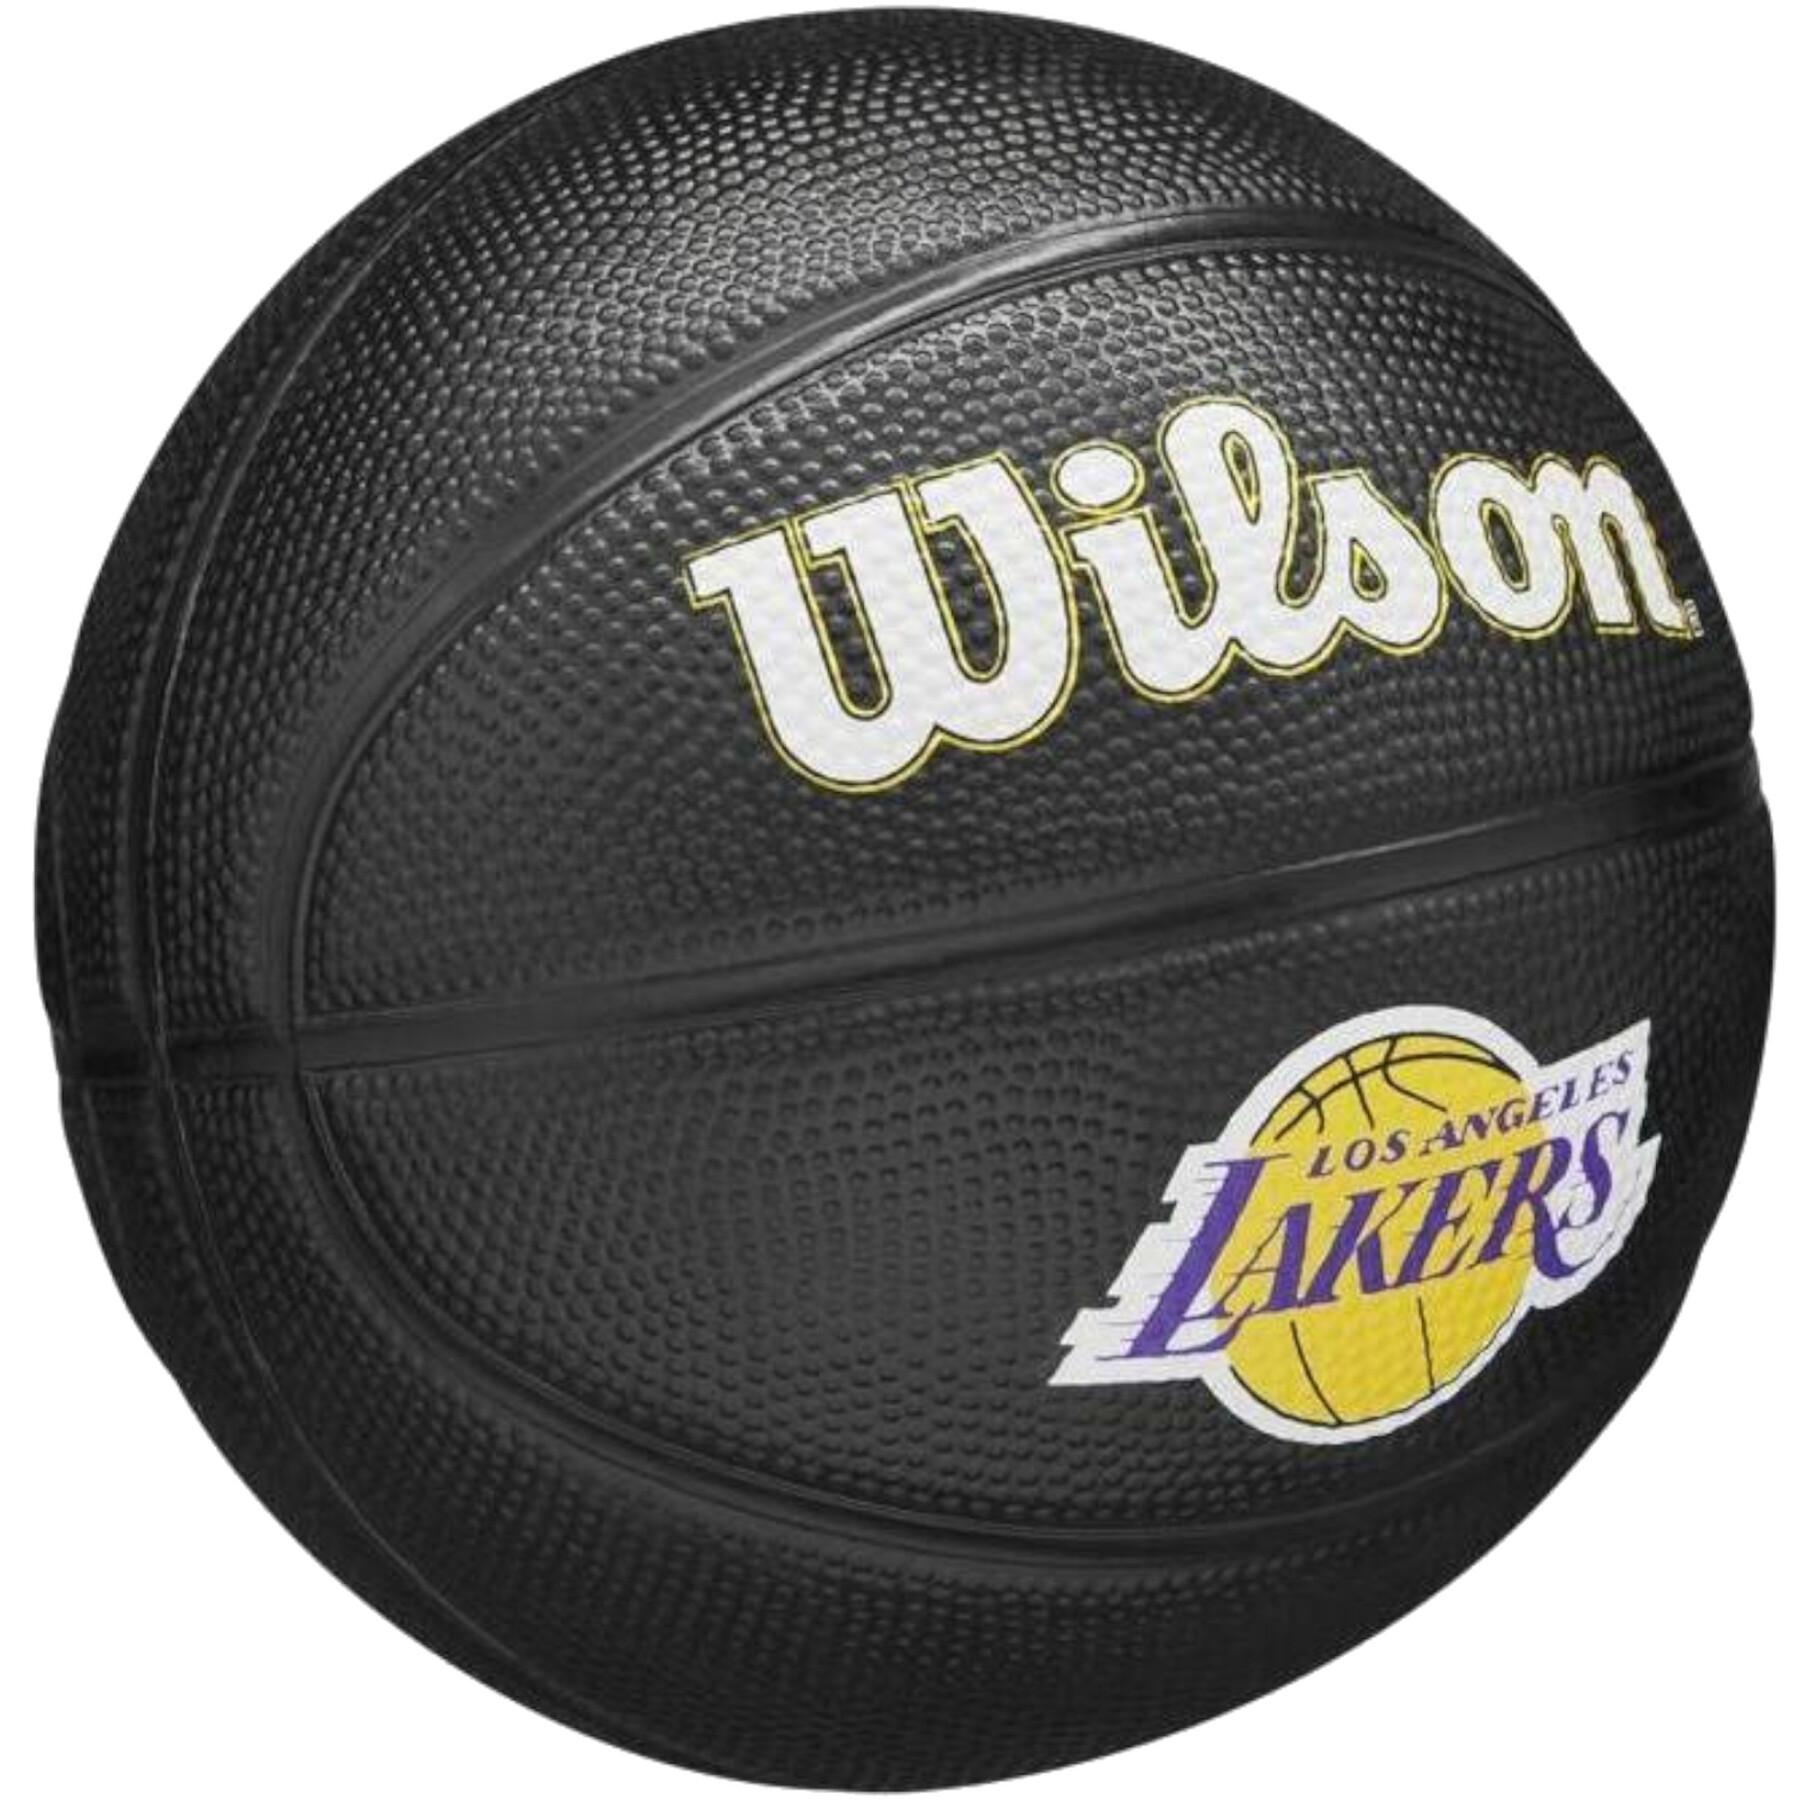 Mini-Basketball nba Los Angeles Lakers